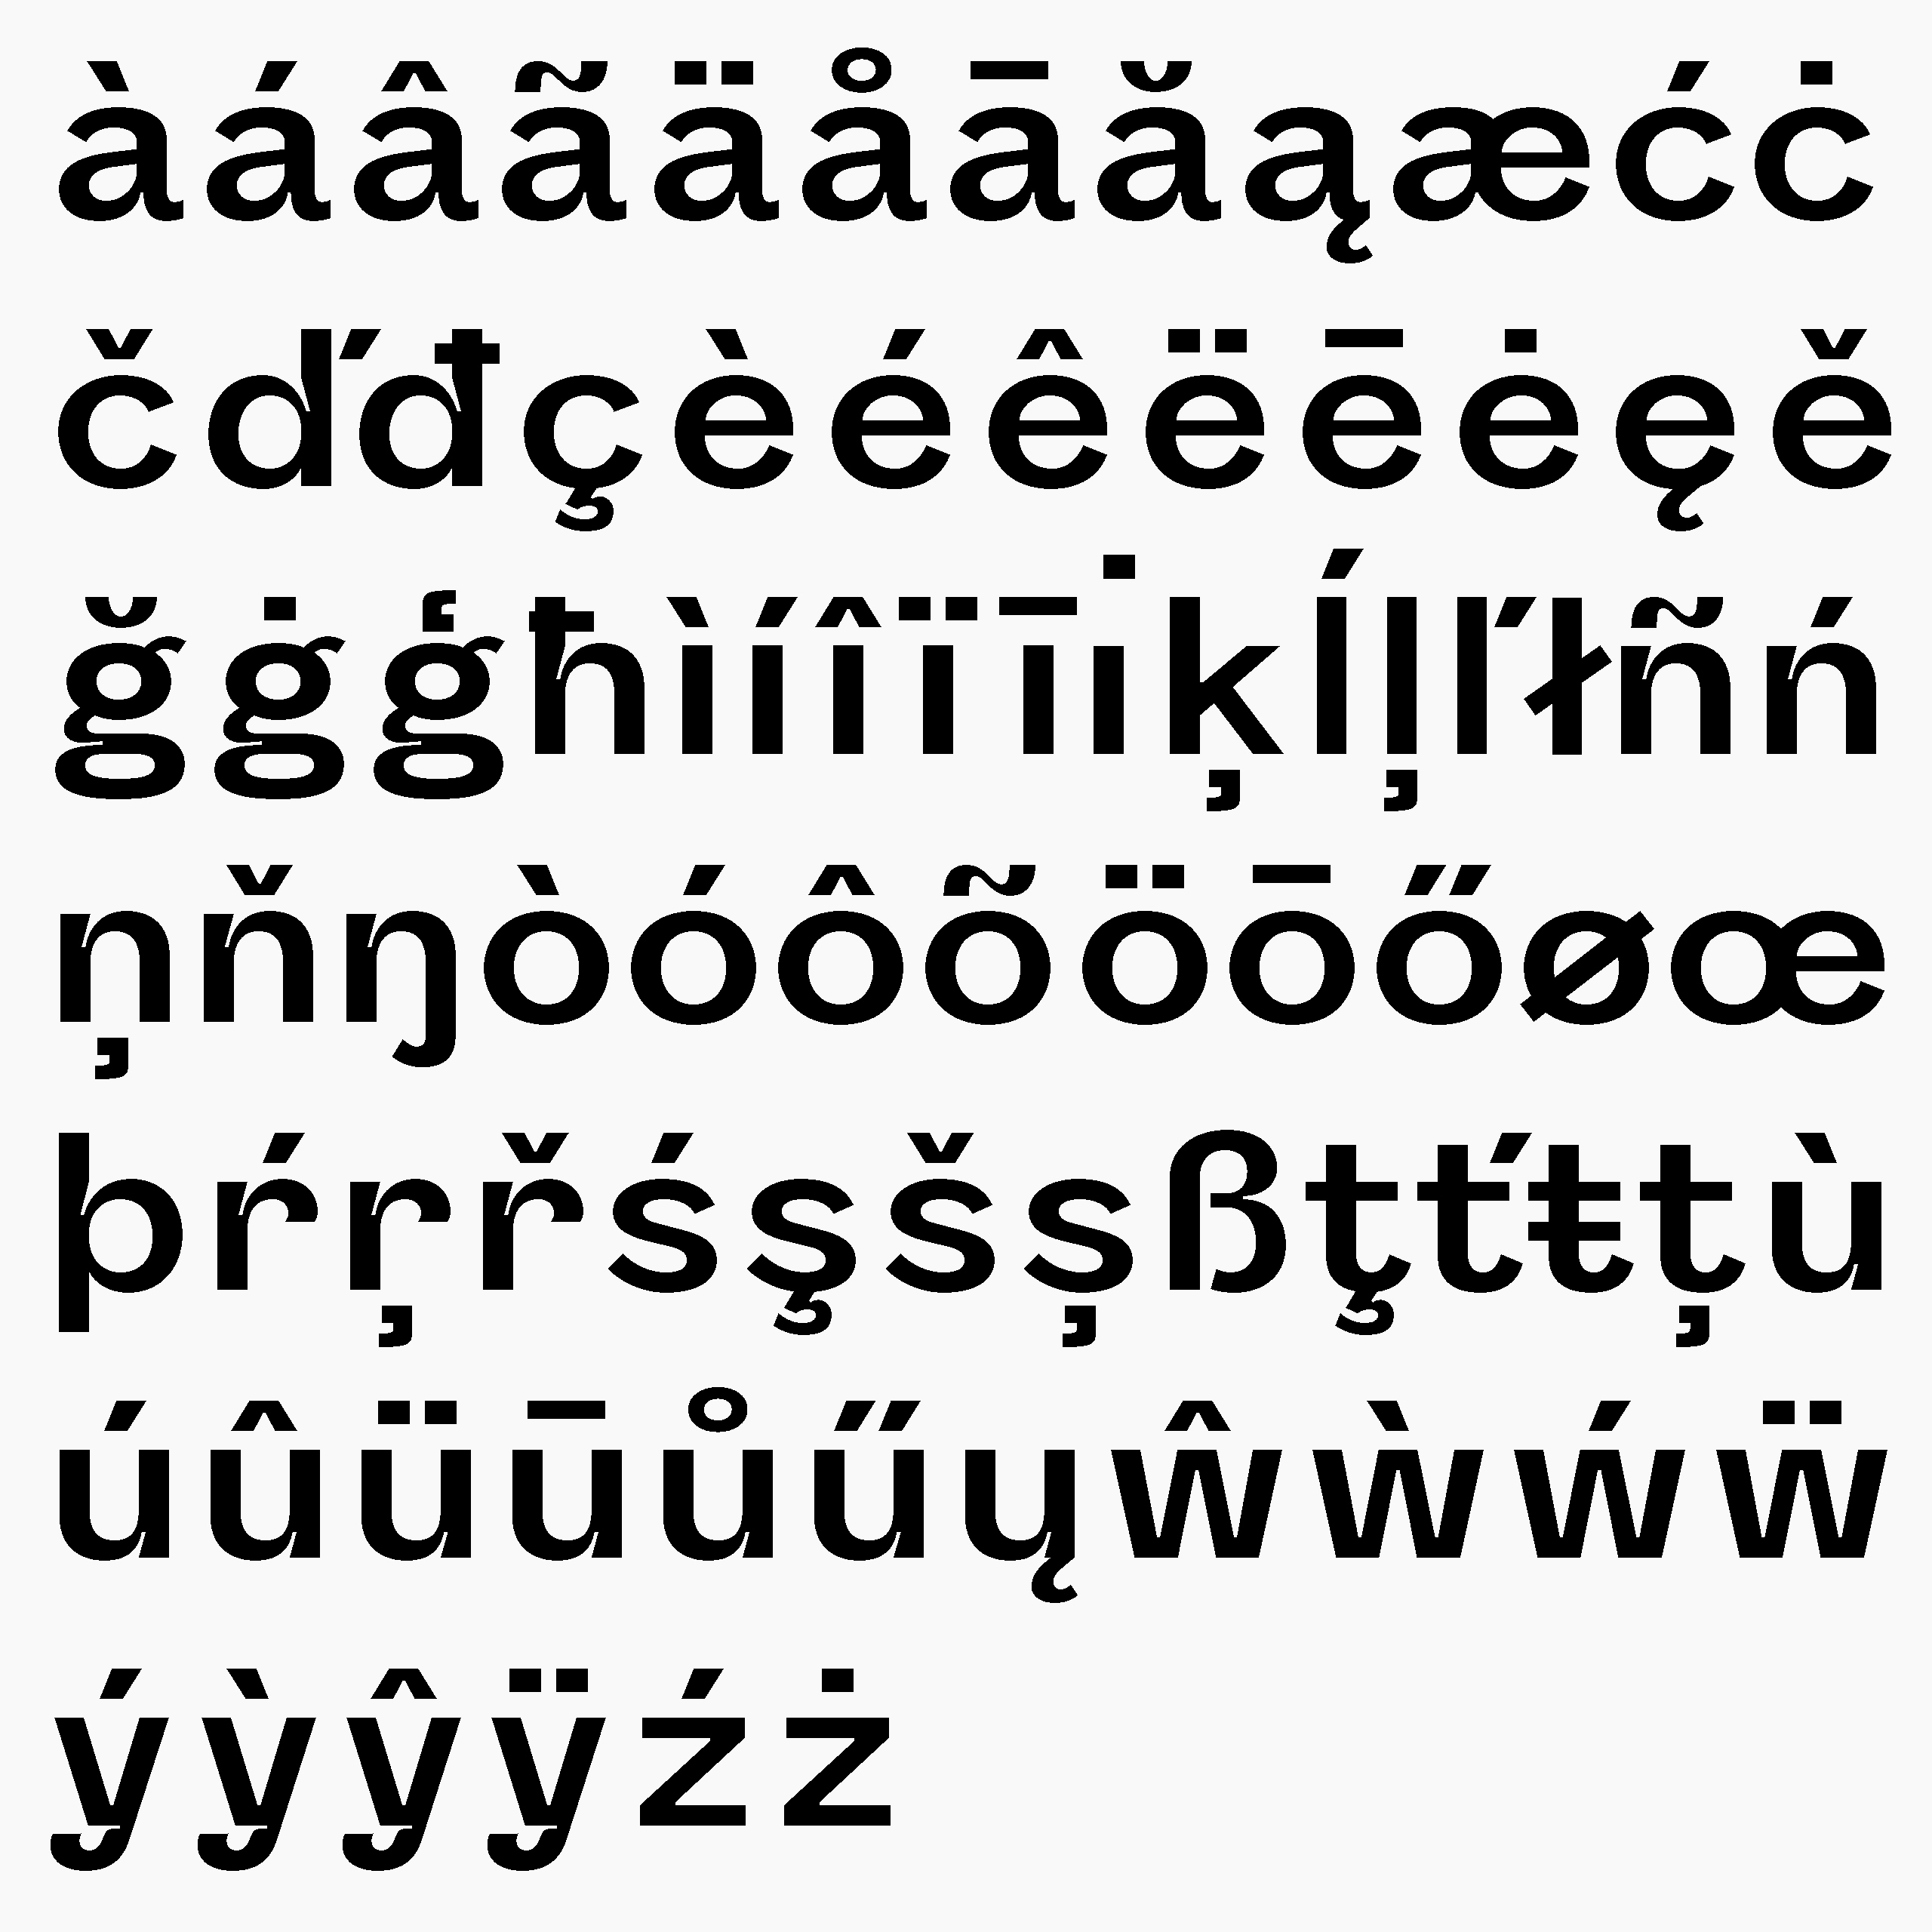 Daniel-Stuhlpfarrer_typedesign_graphicdesign_custom-font_custom-typeface_typography_Melange-5